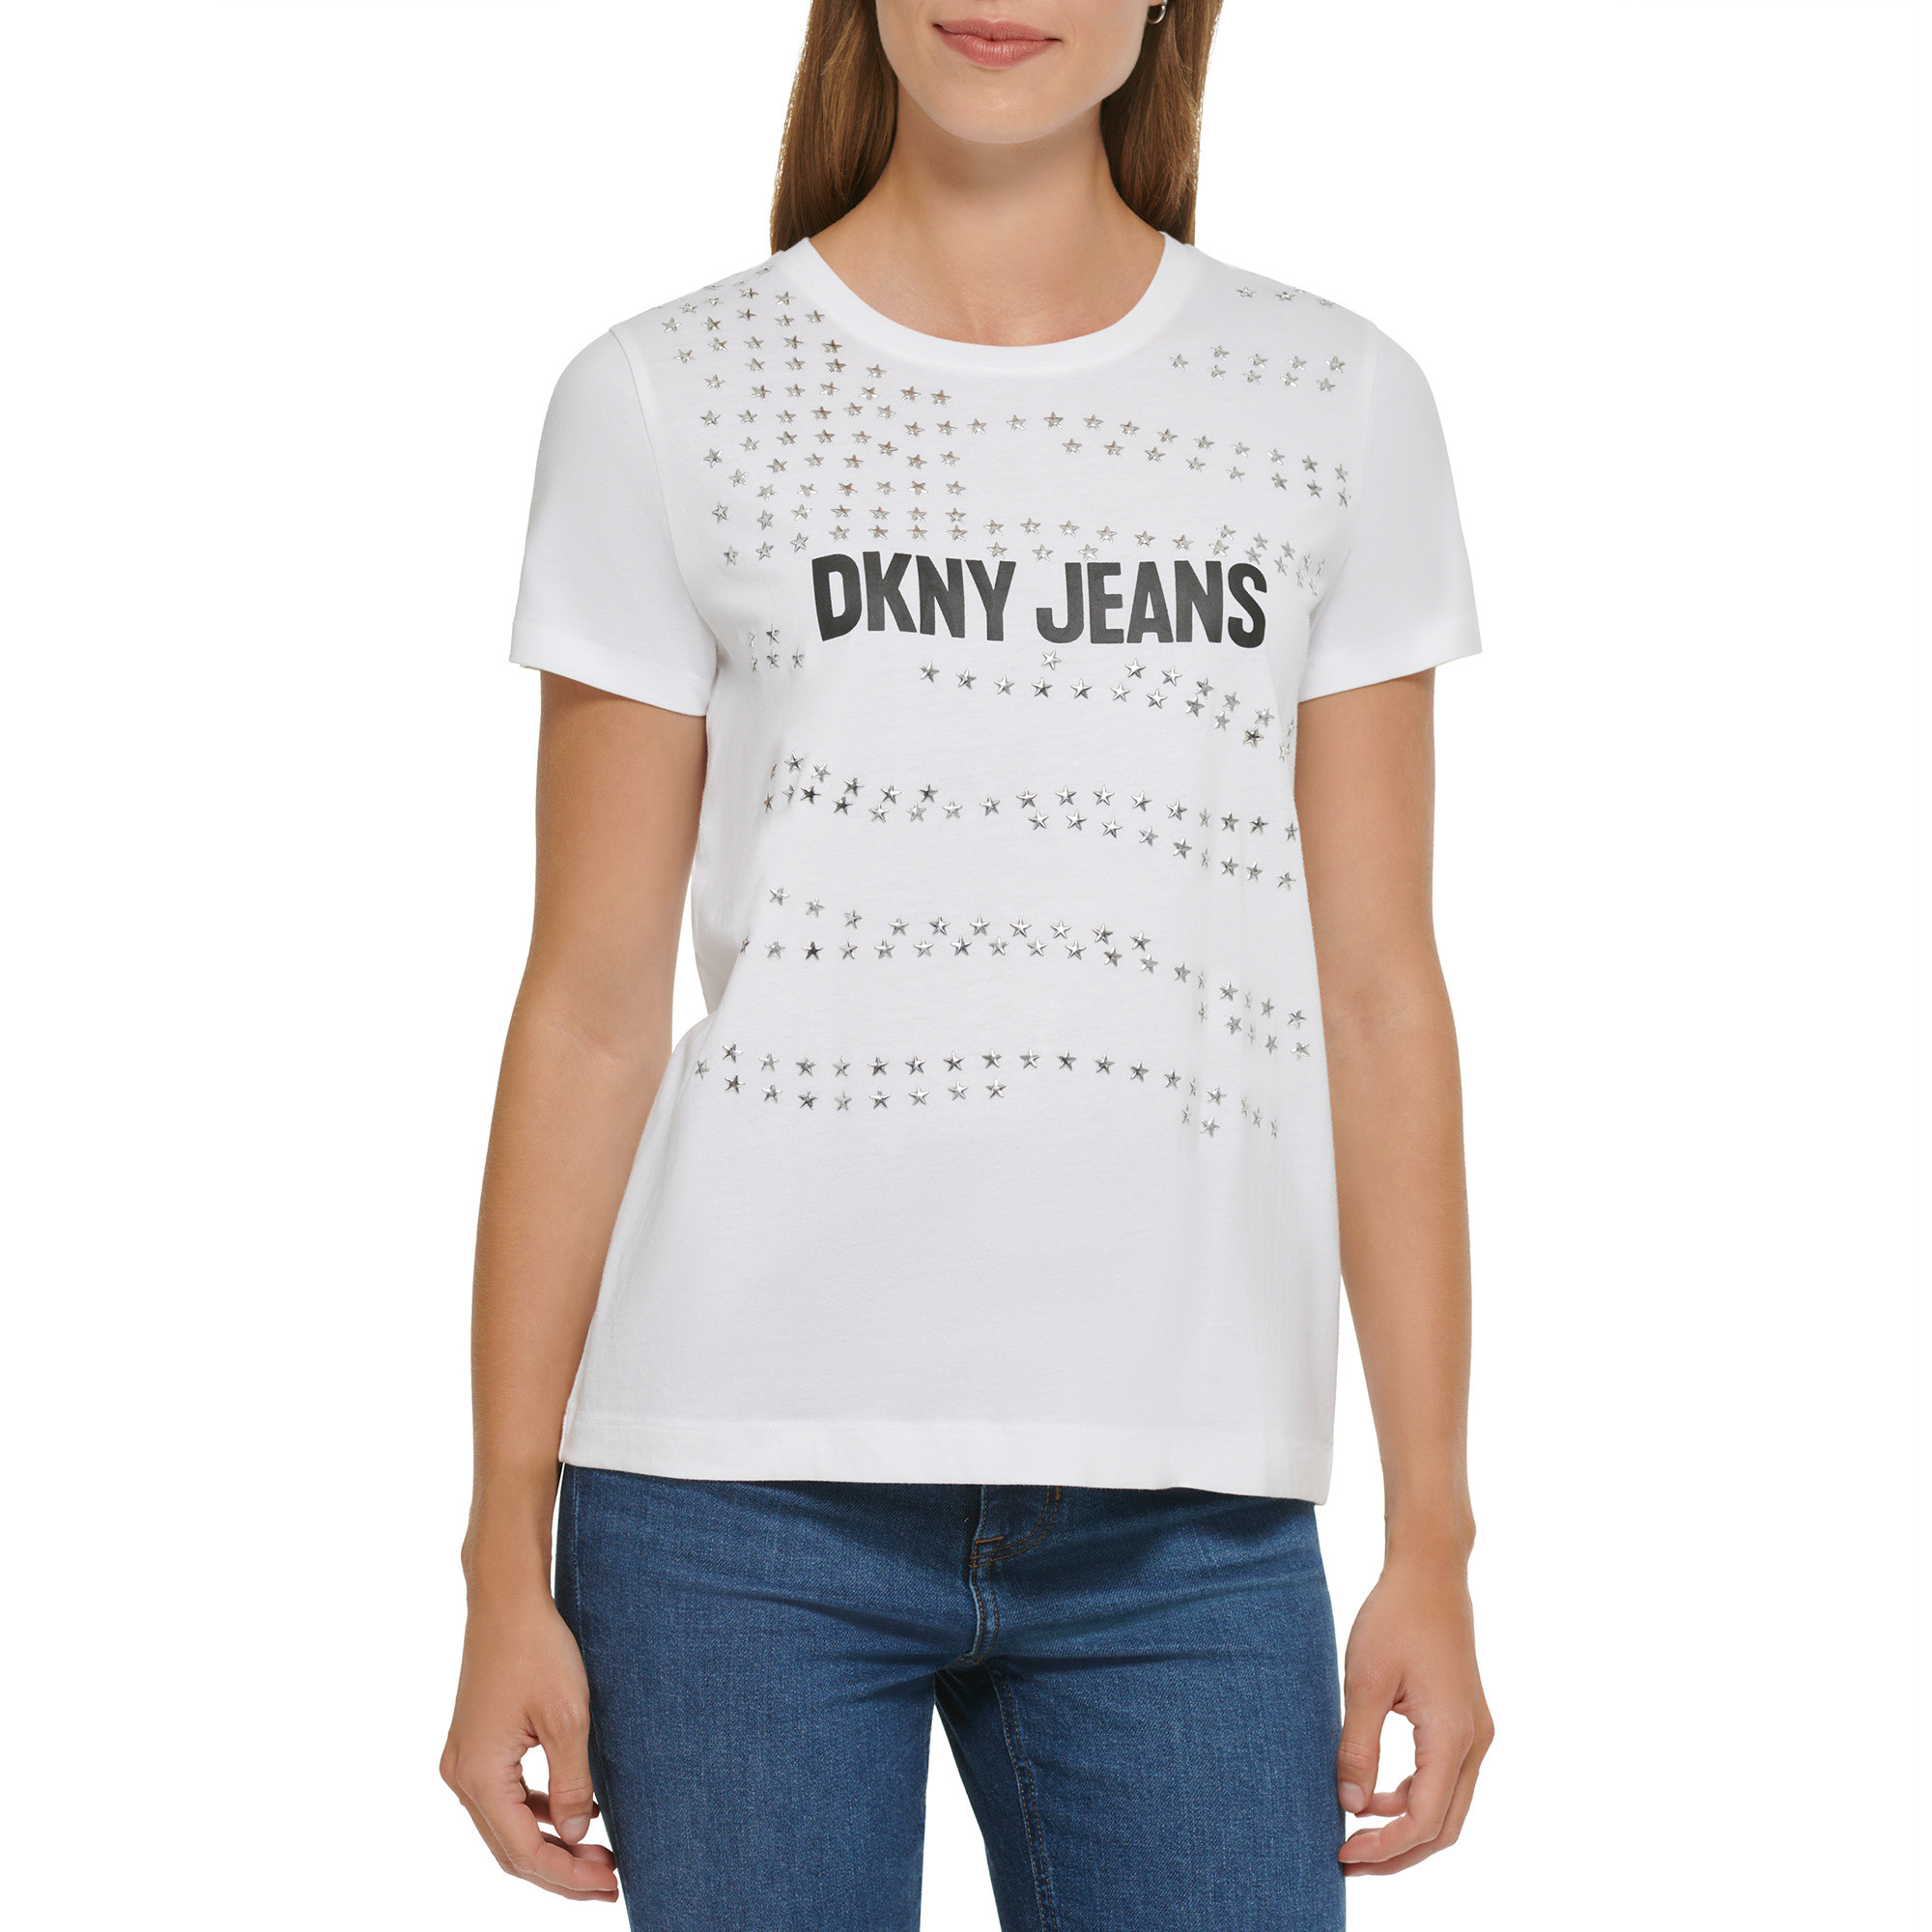 DKNY - Logo T-Shirt, White, large image number 3